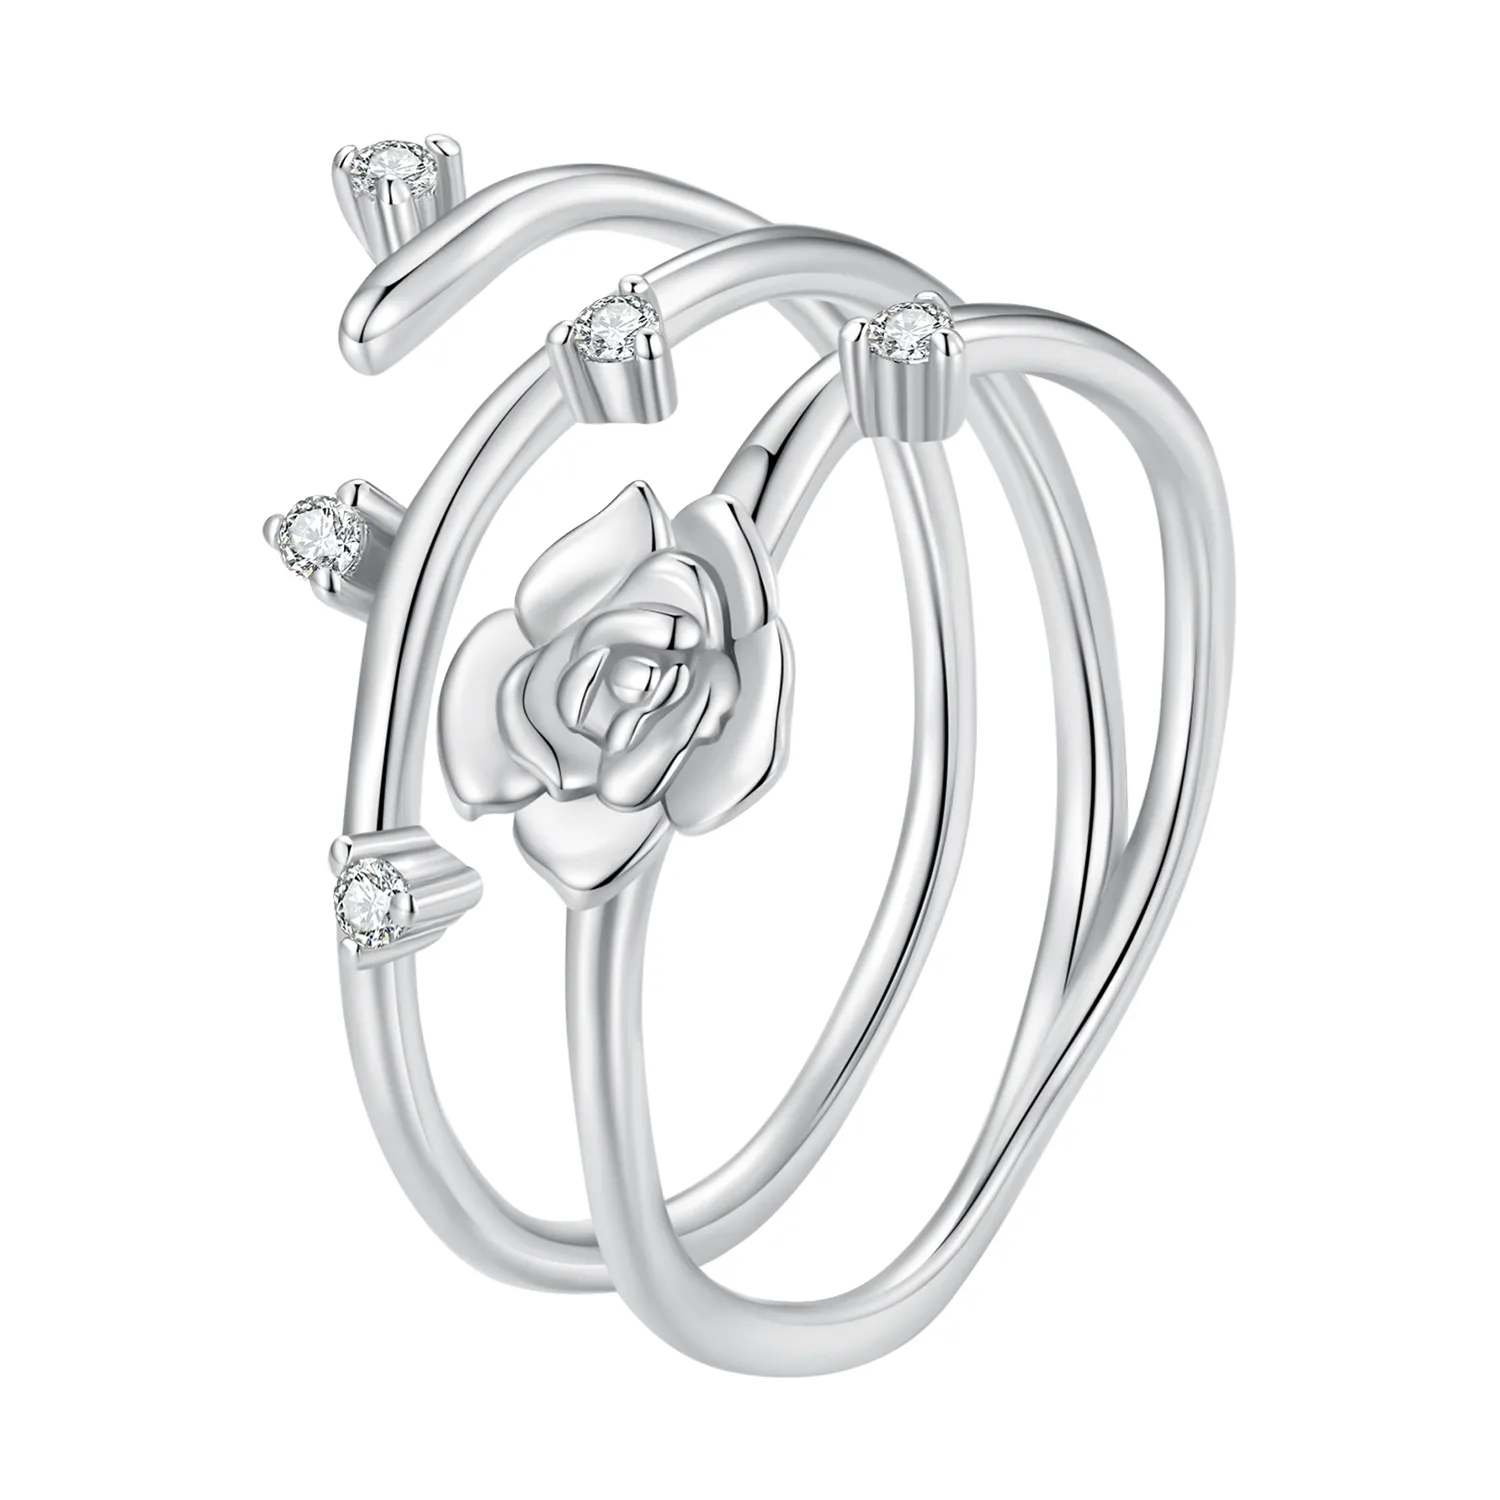 Inel personalizat în stil Pandora, cu design versatil de viță de trandafir - BSR404